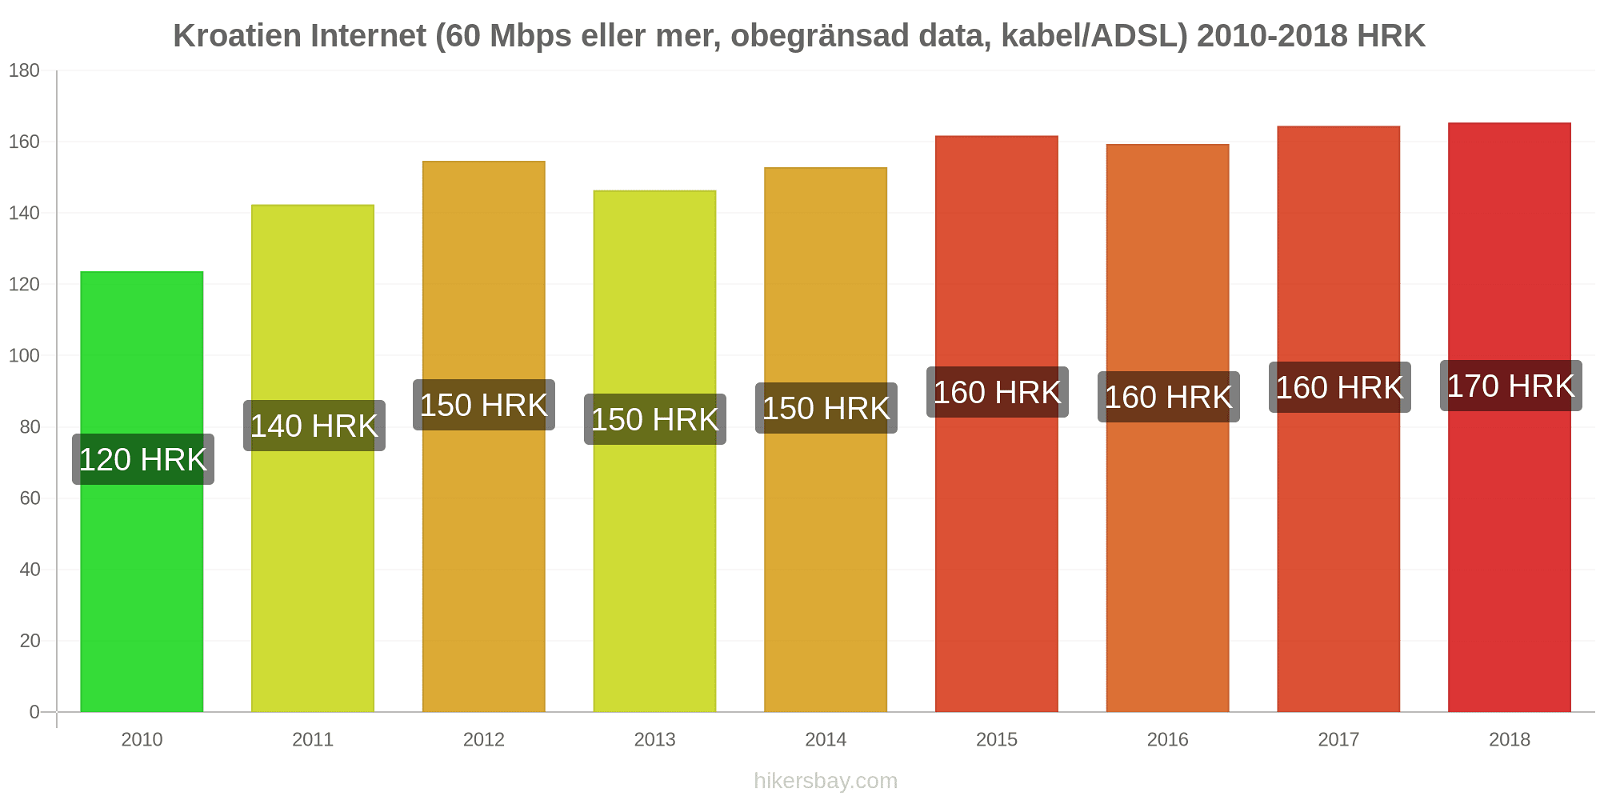 Kroatien prisändringar Internet (60 Mbps eller mer, obegränsad data, kabel/ADSL) hikersbay.com